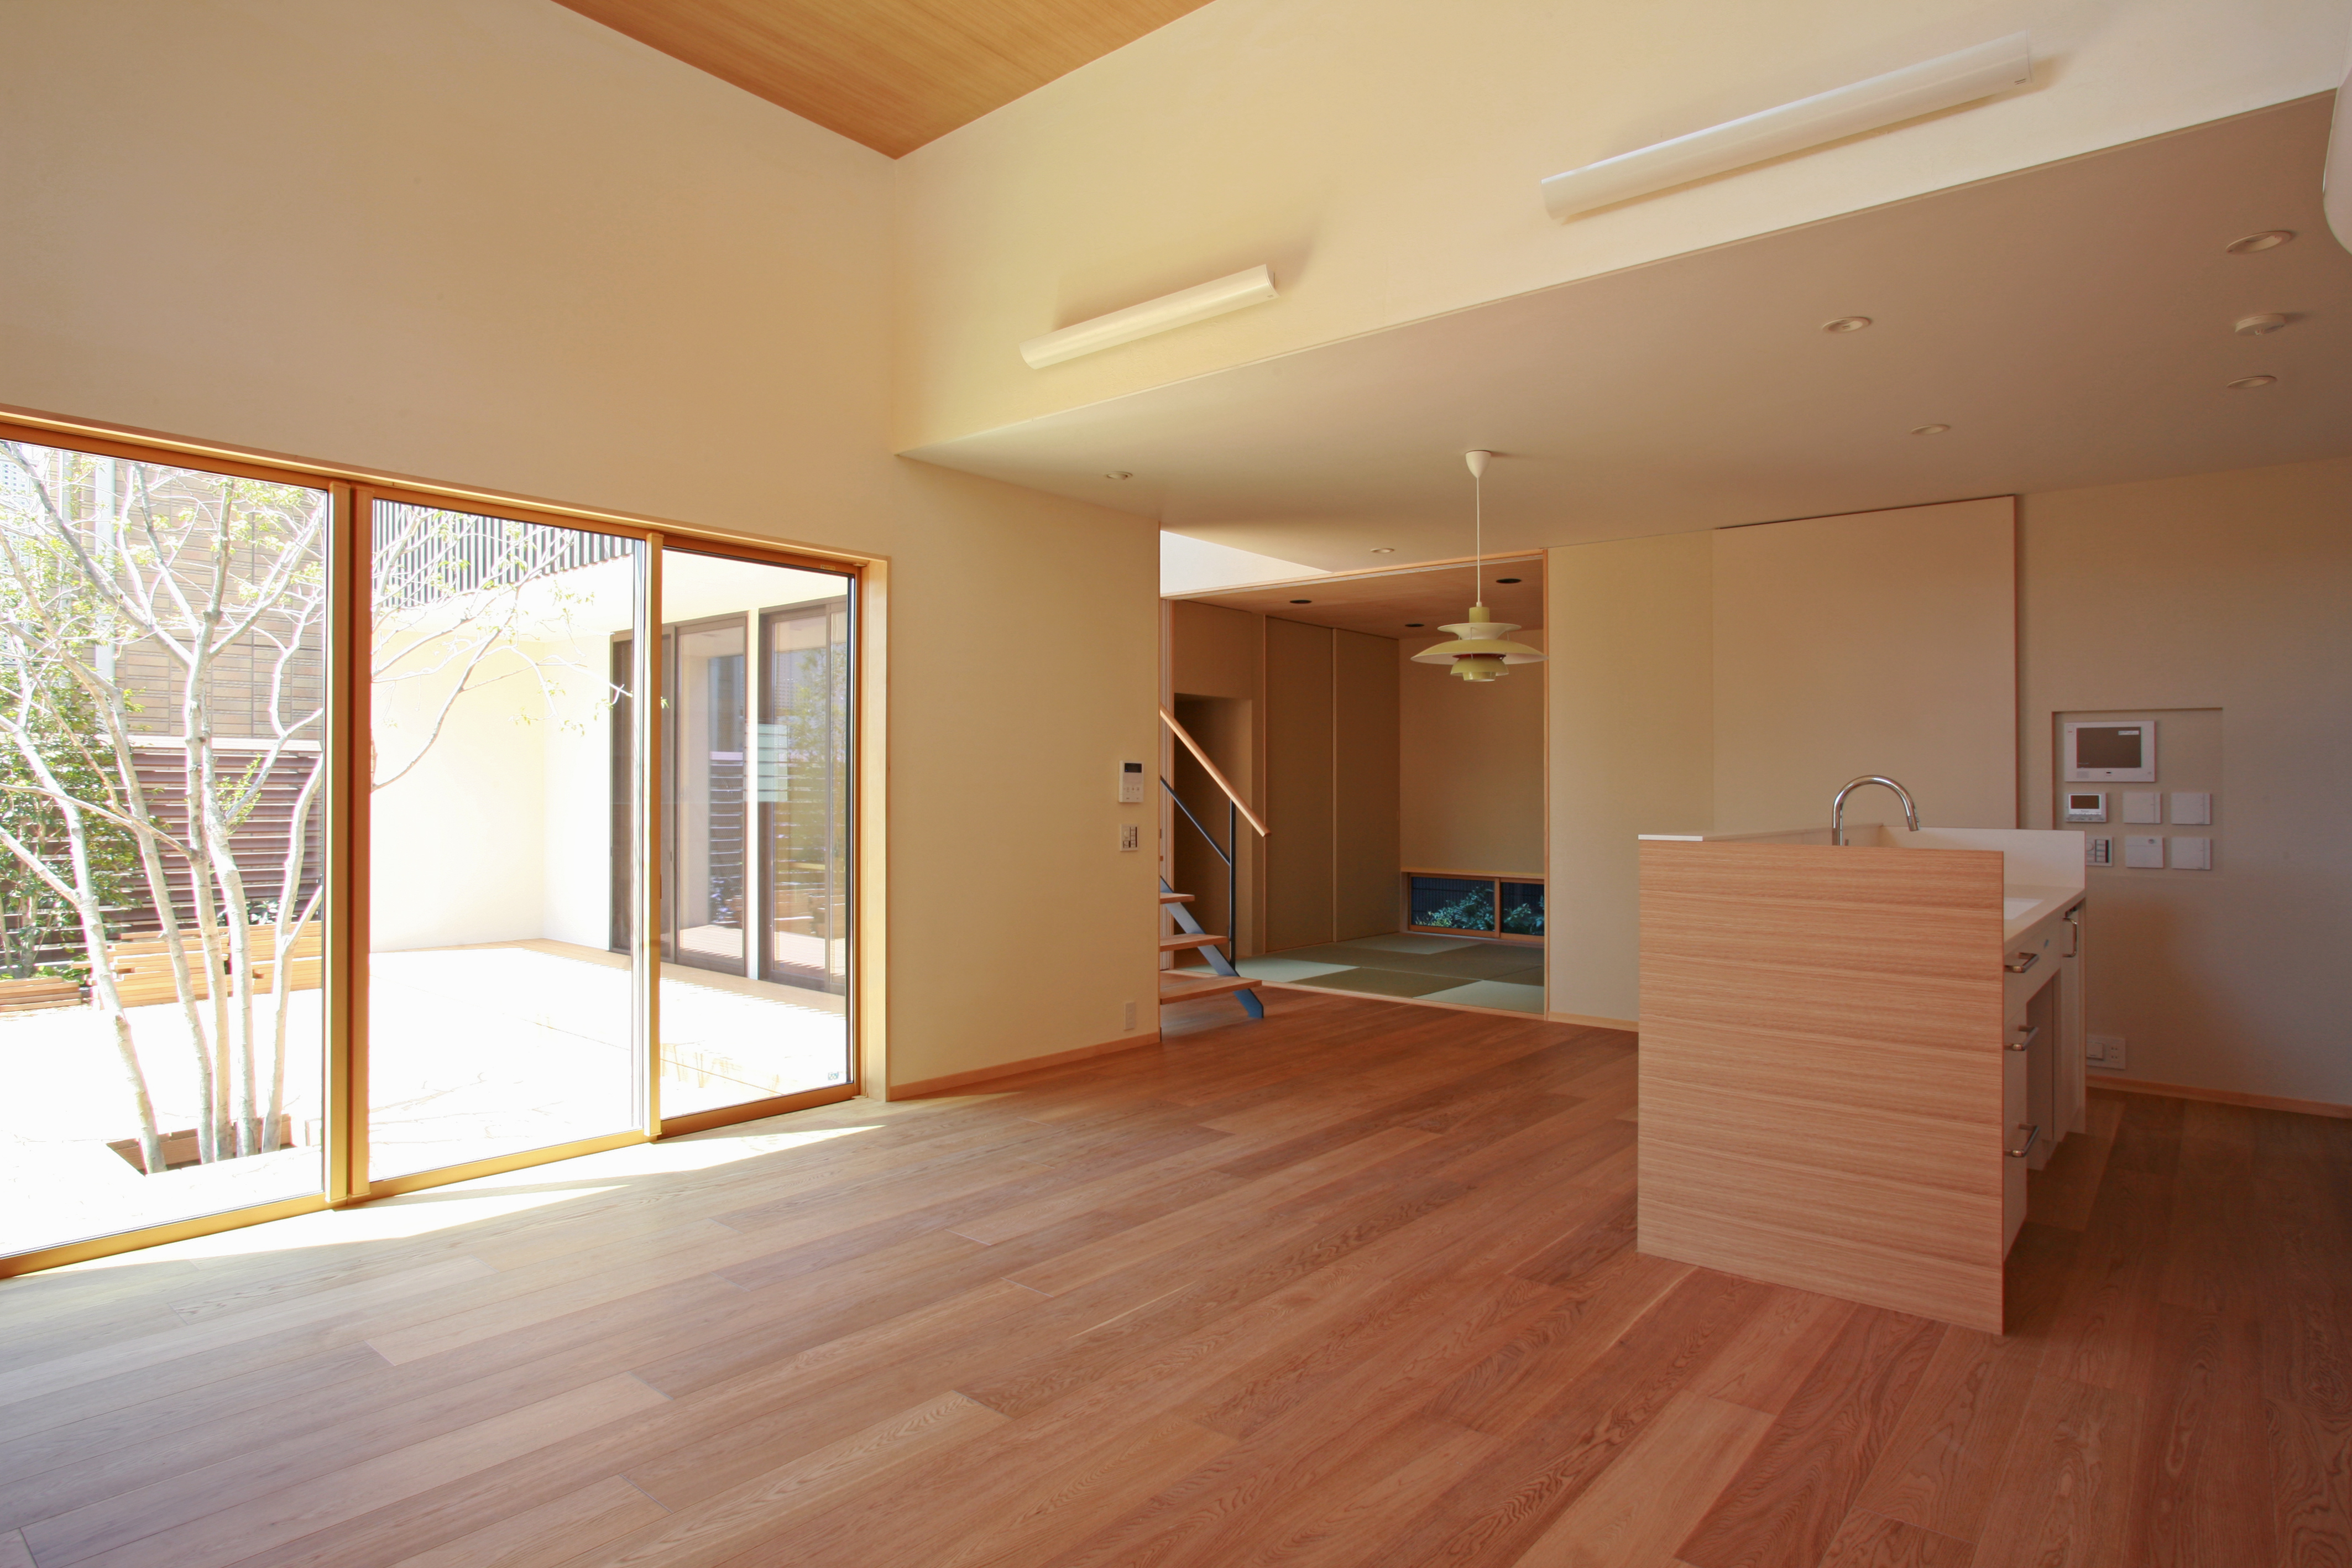  Rumah Jepang  dengan Fasad dan Interior  Minimalis Menawan 